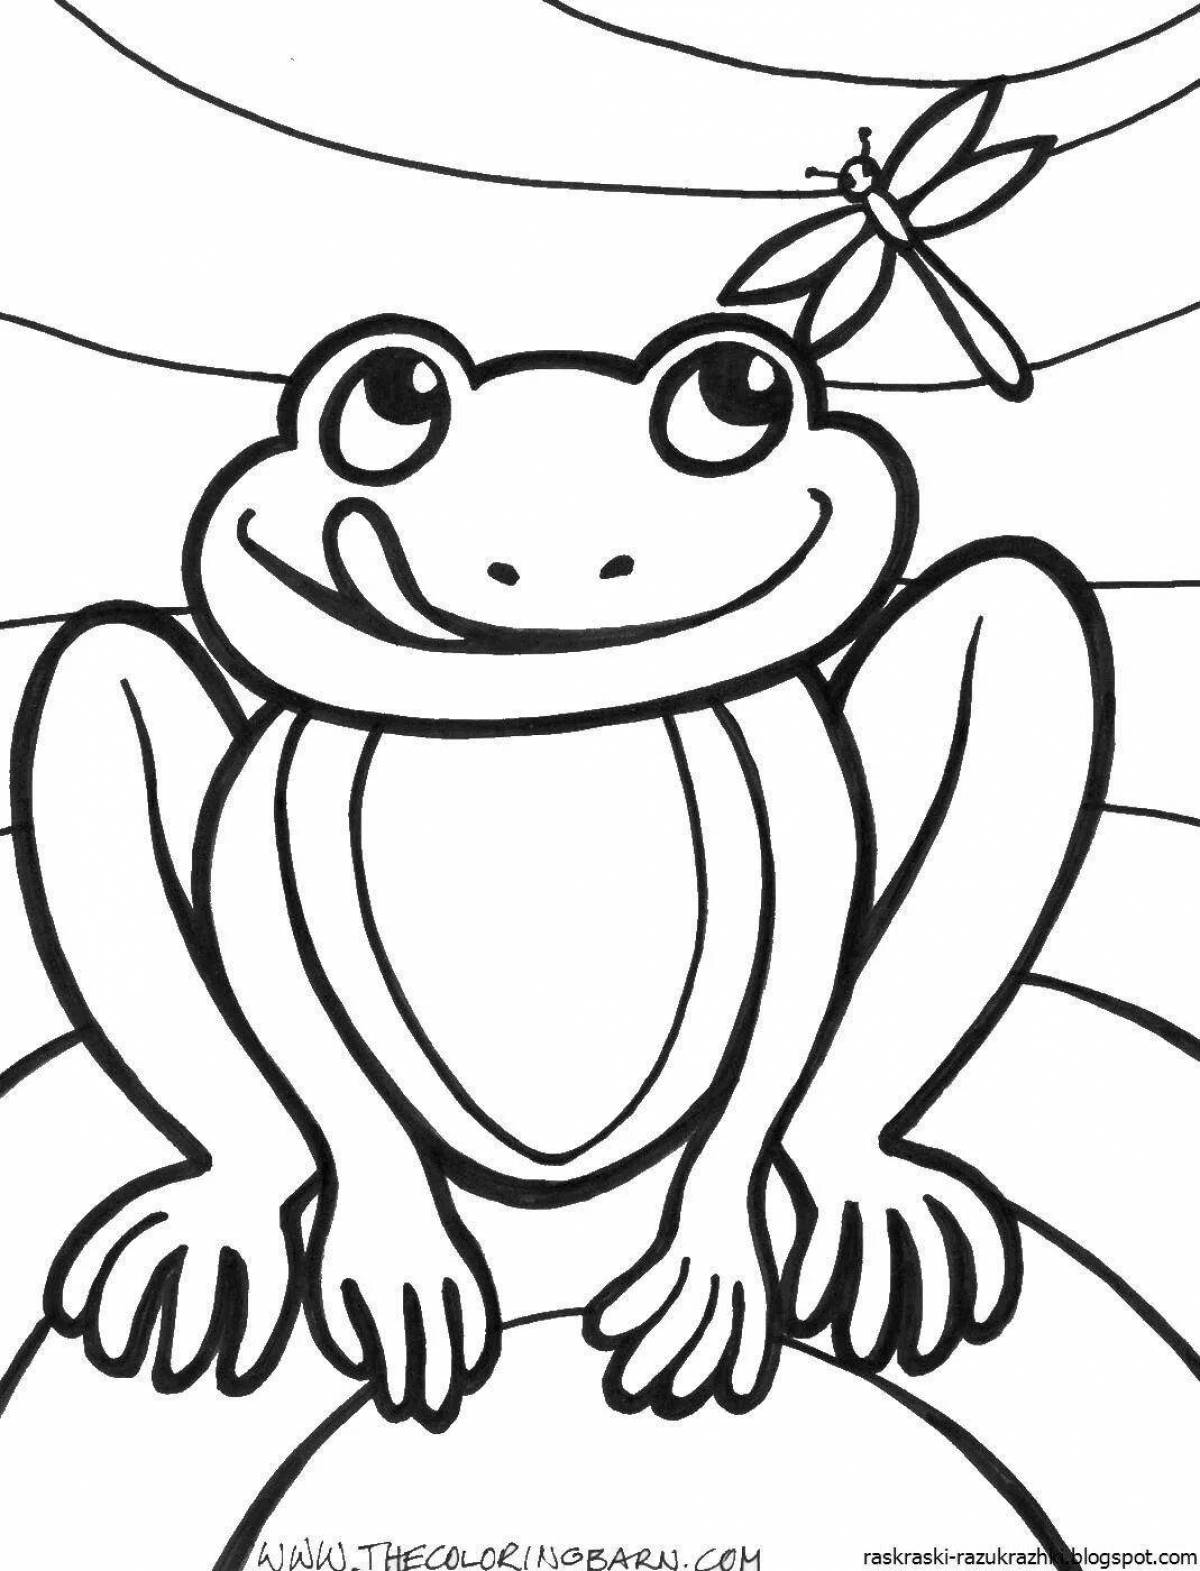 Живой рисунок лягушки для детей